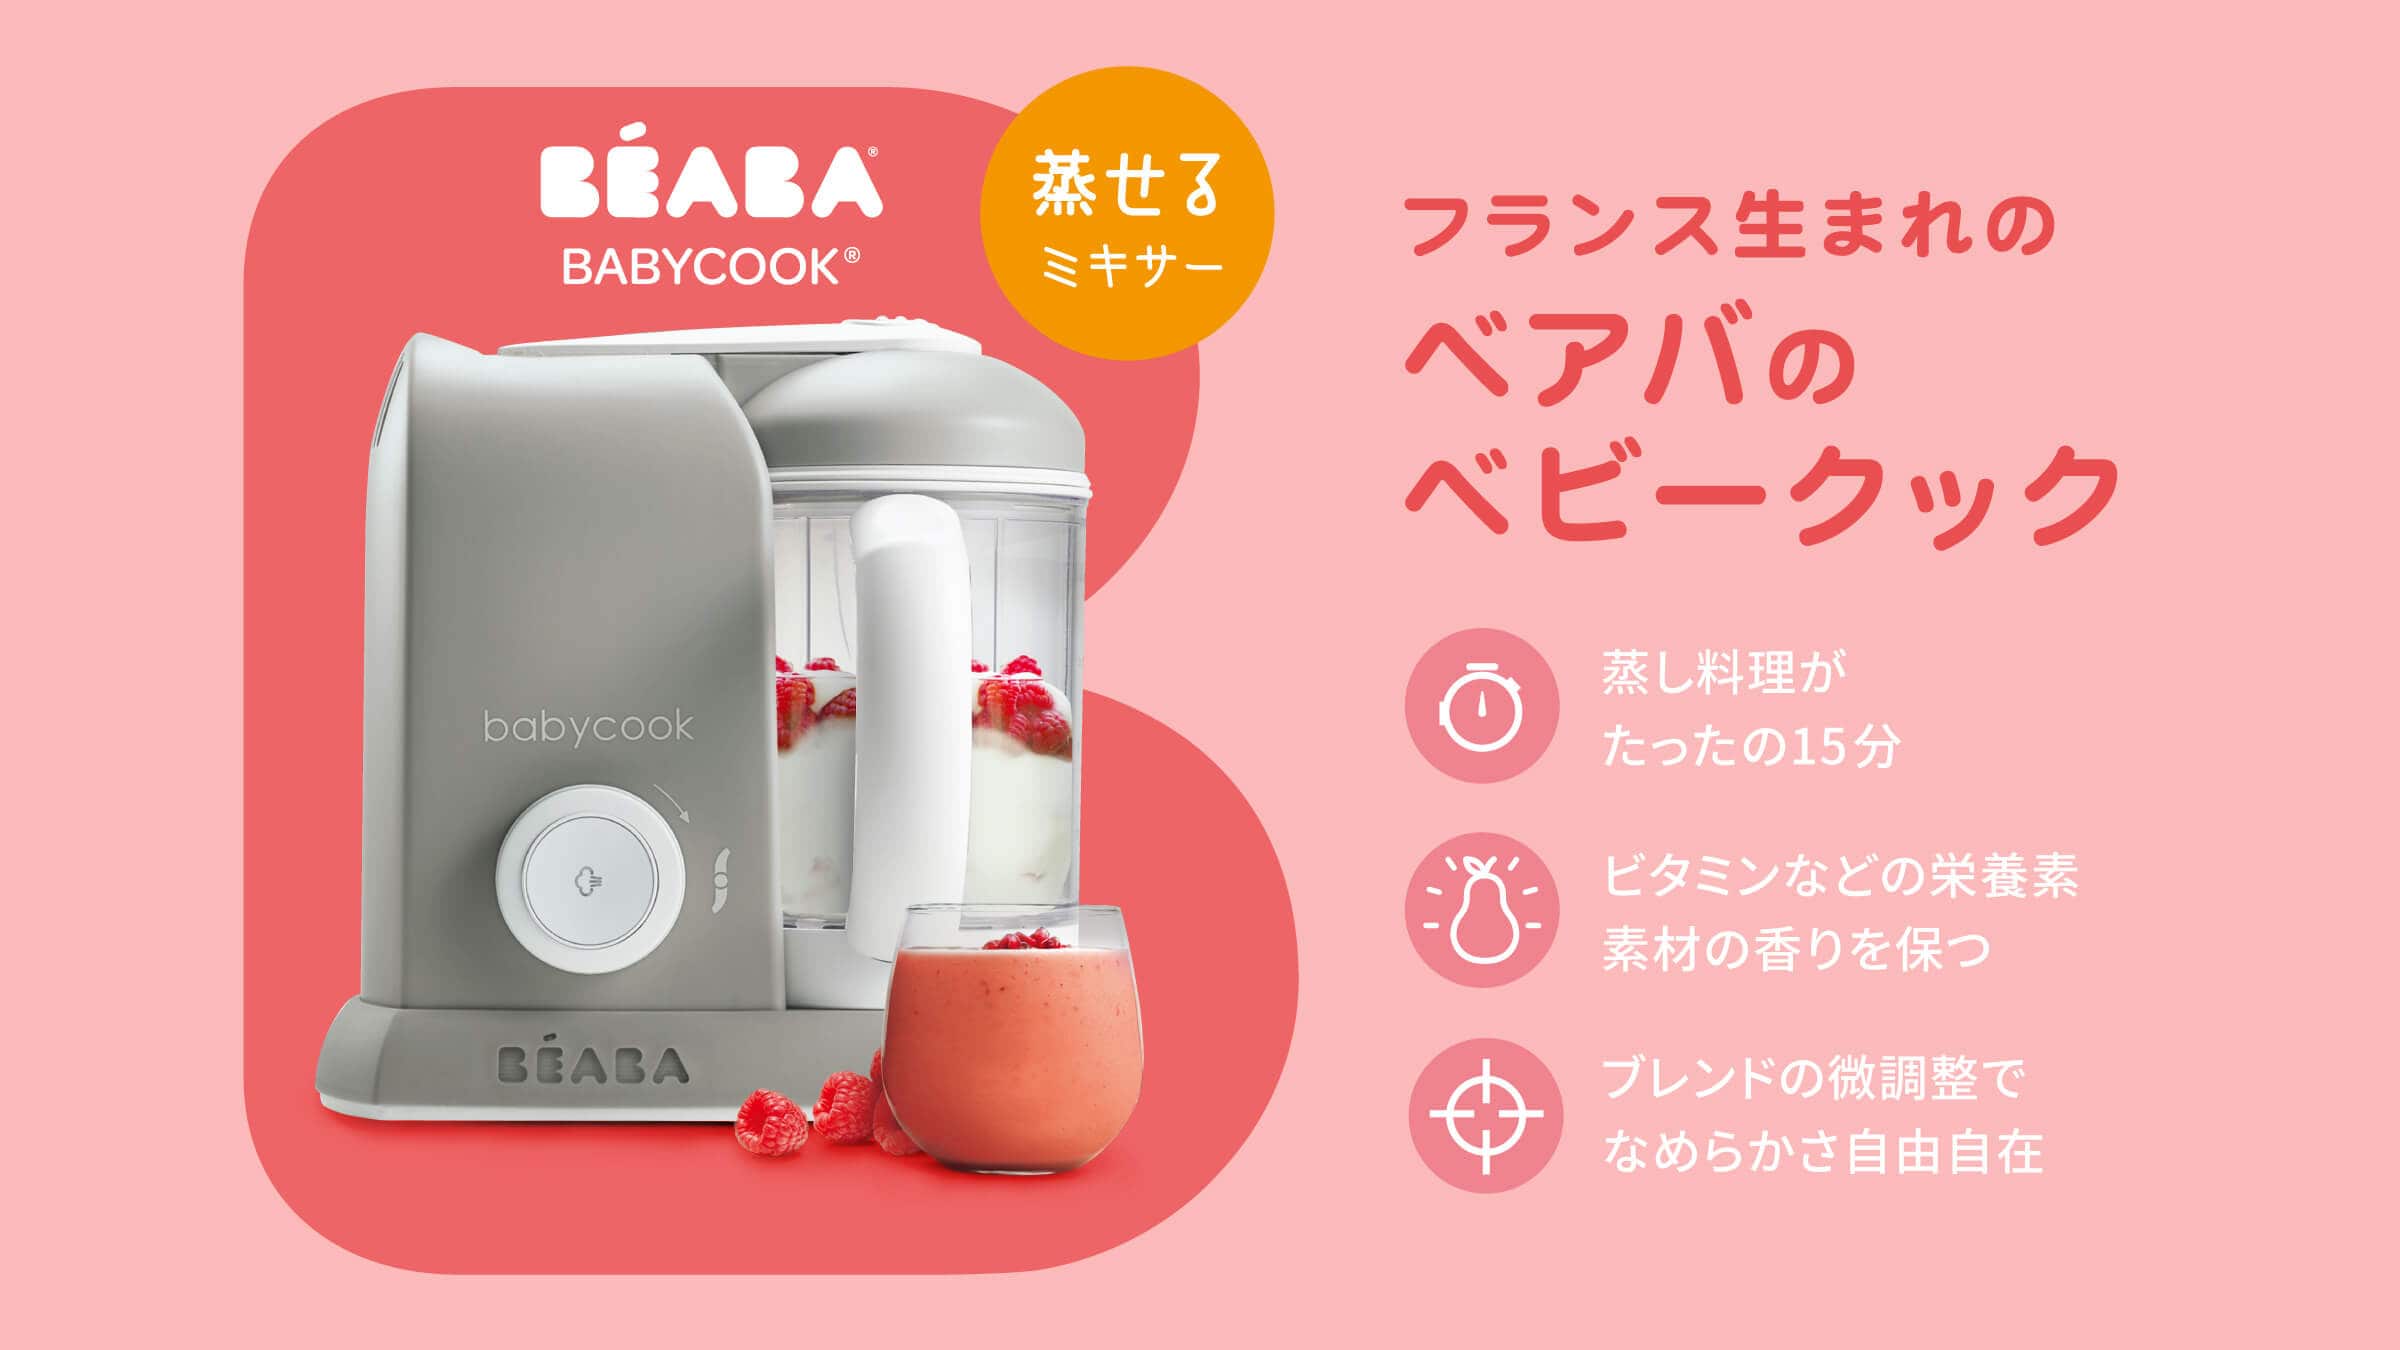 授乳/お食事用品ベアバ ベビークック - 離乳食調理器具